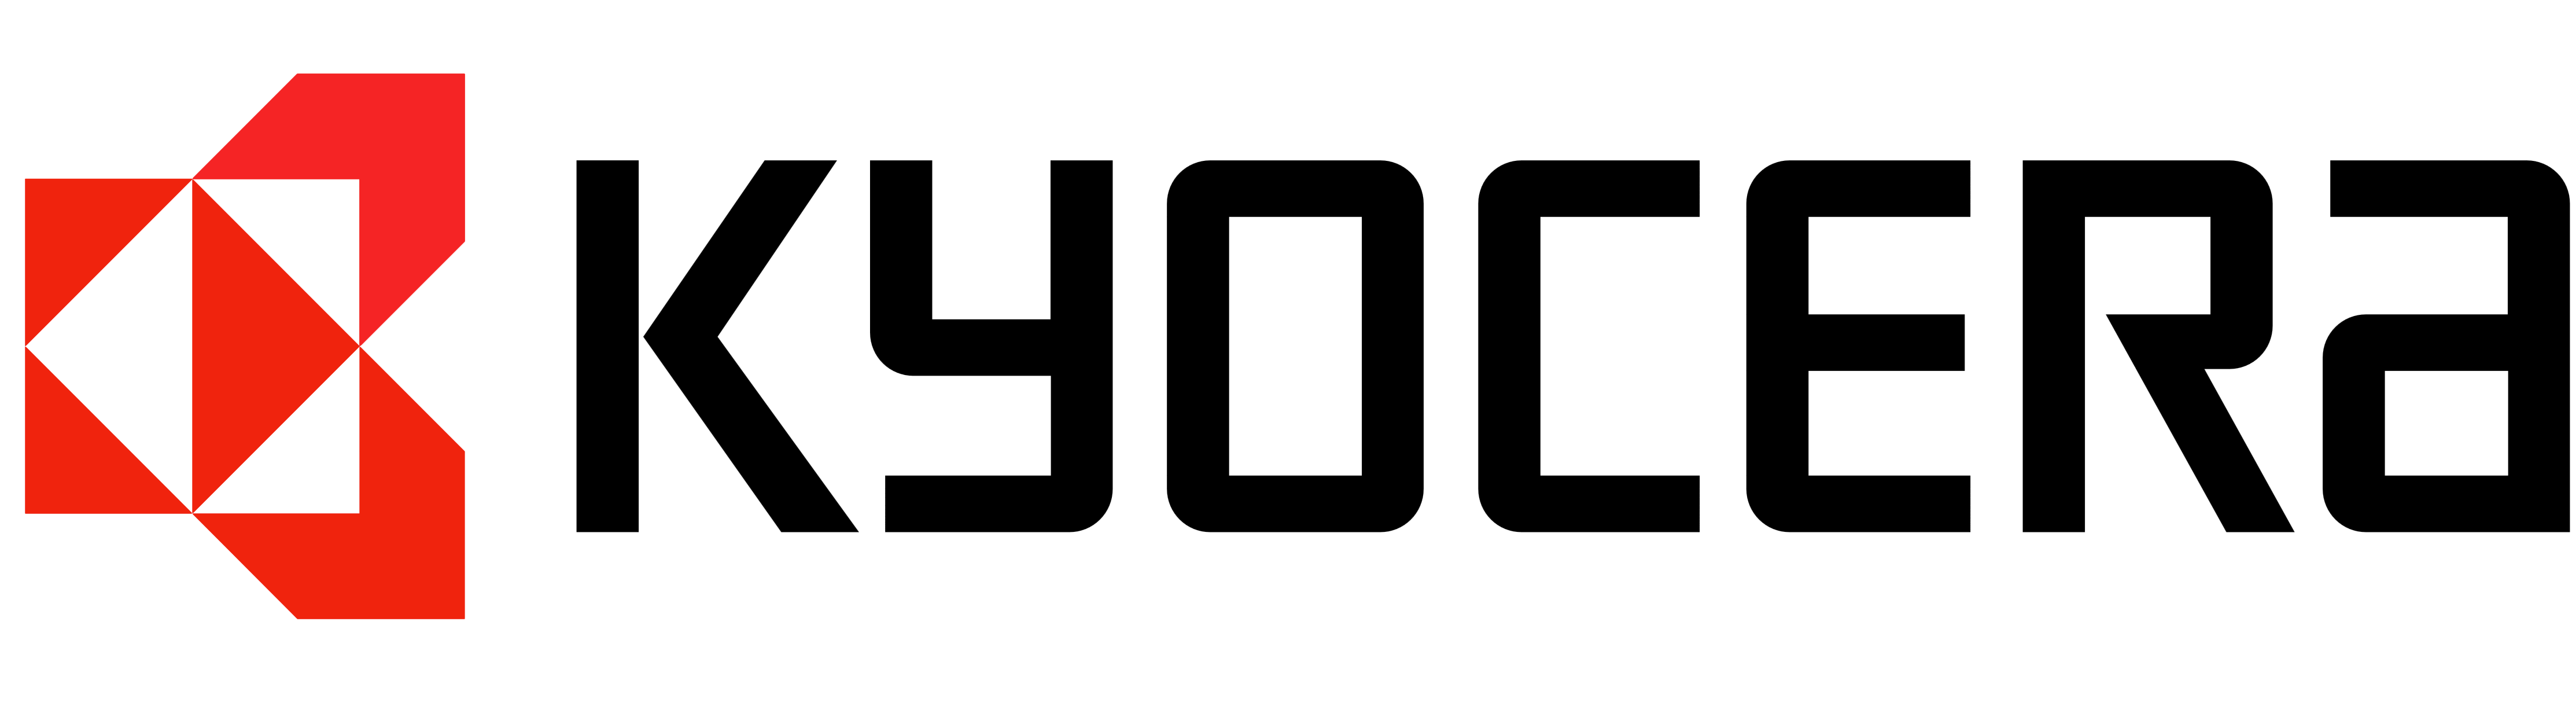 Kyocera Vector Logo PNG - 32828